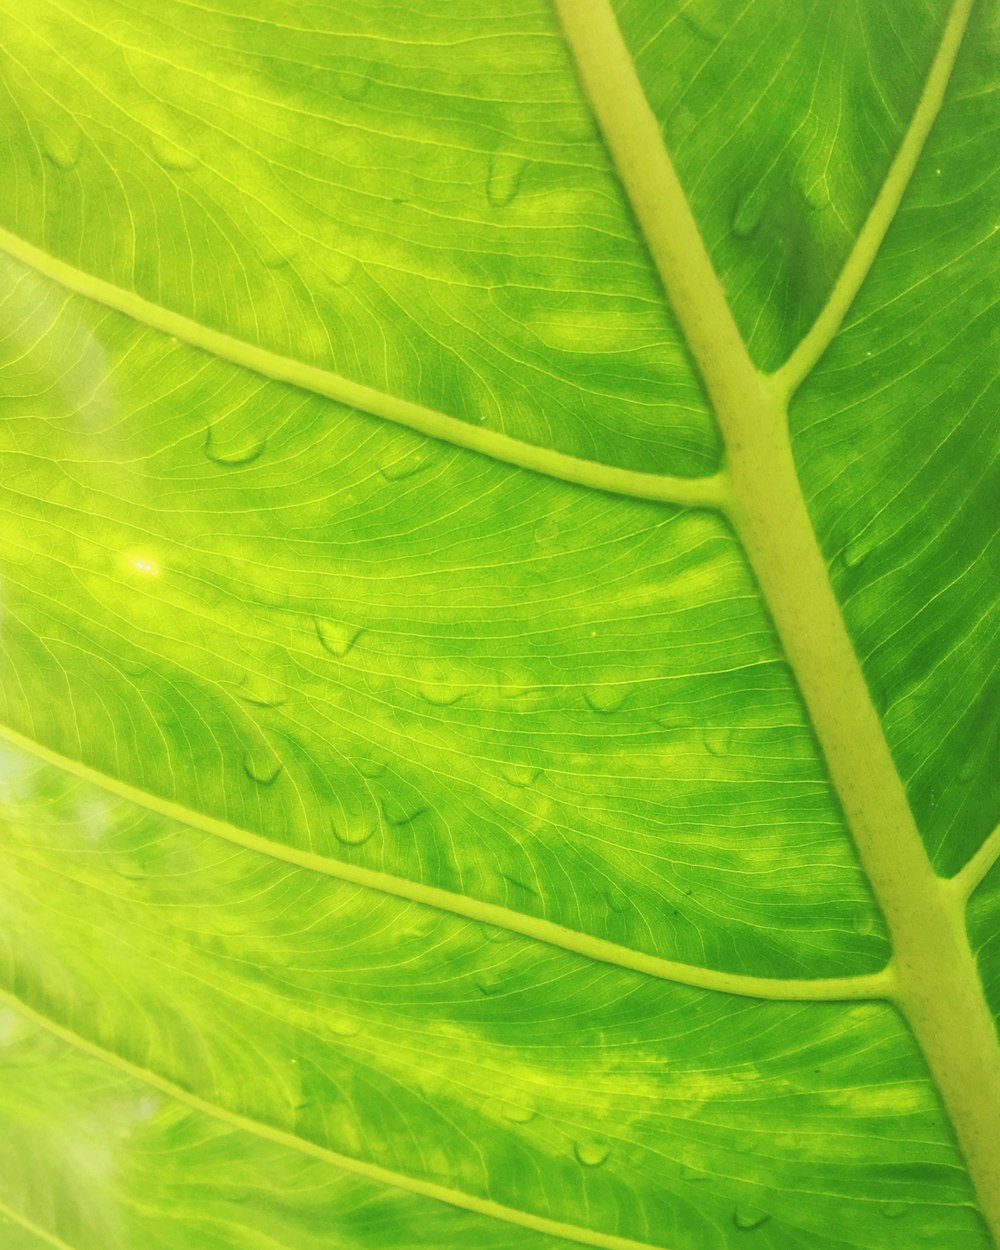 water dew on green leaf